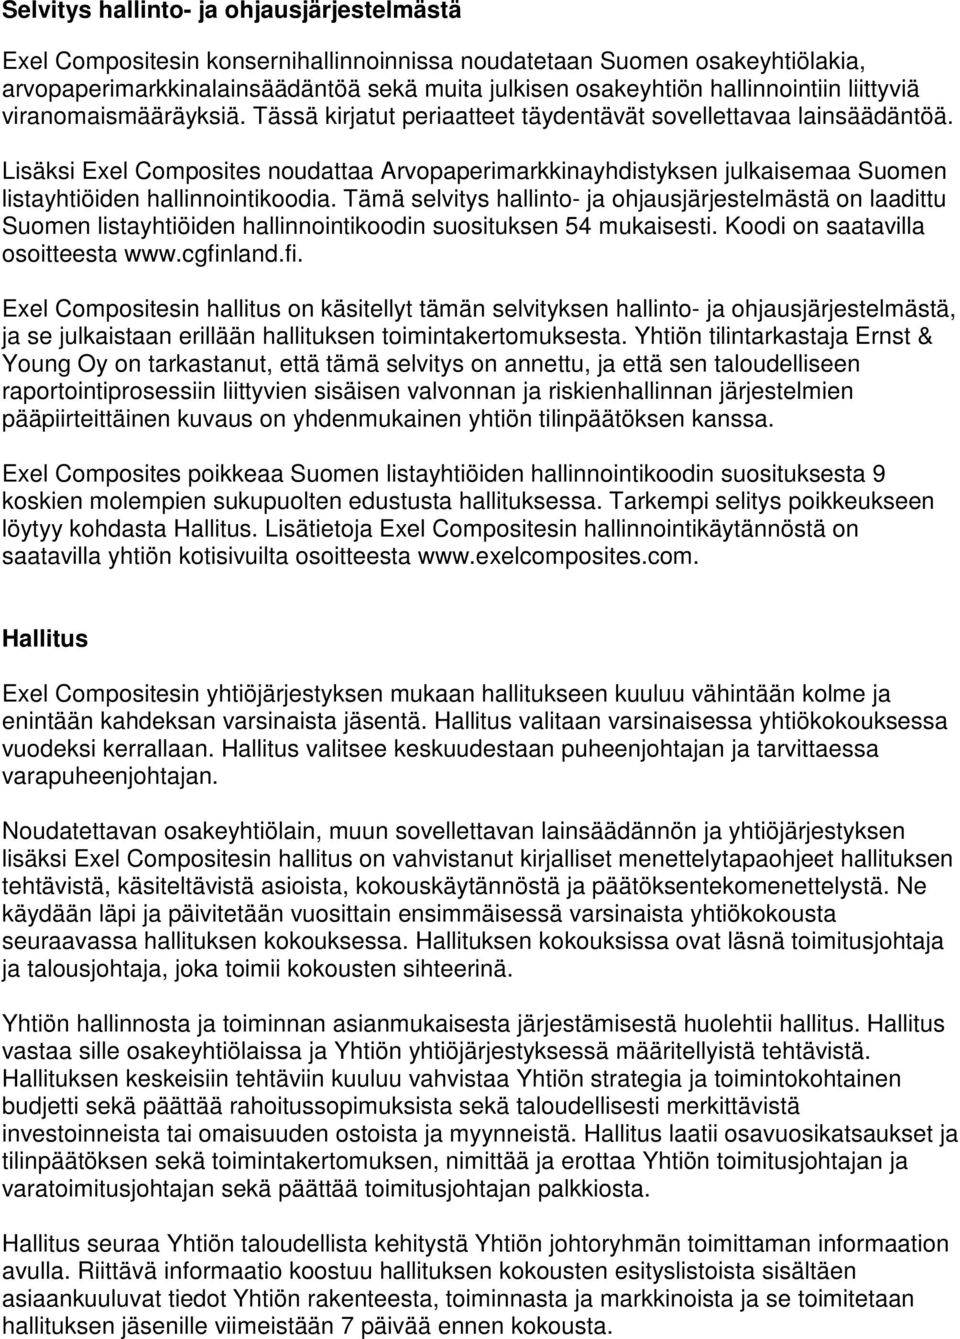 Lisäksi Exel Composites noudattaa Arvopaperimarkkinayhdistyksen julkaisemaa Suomen listayhtiöiden hallinnointikoodia.